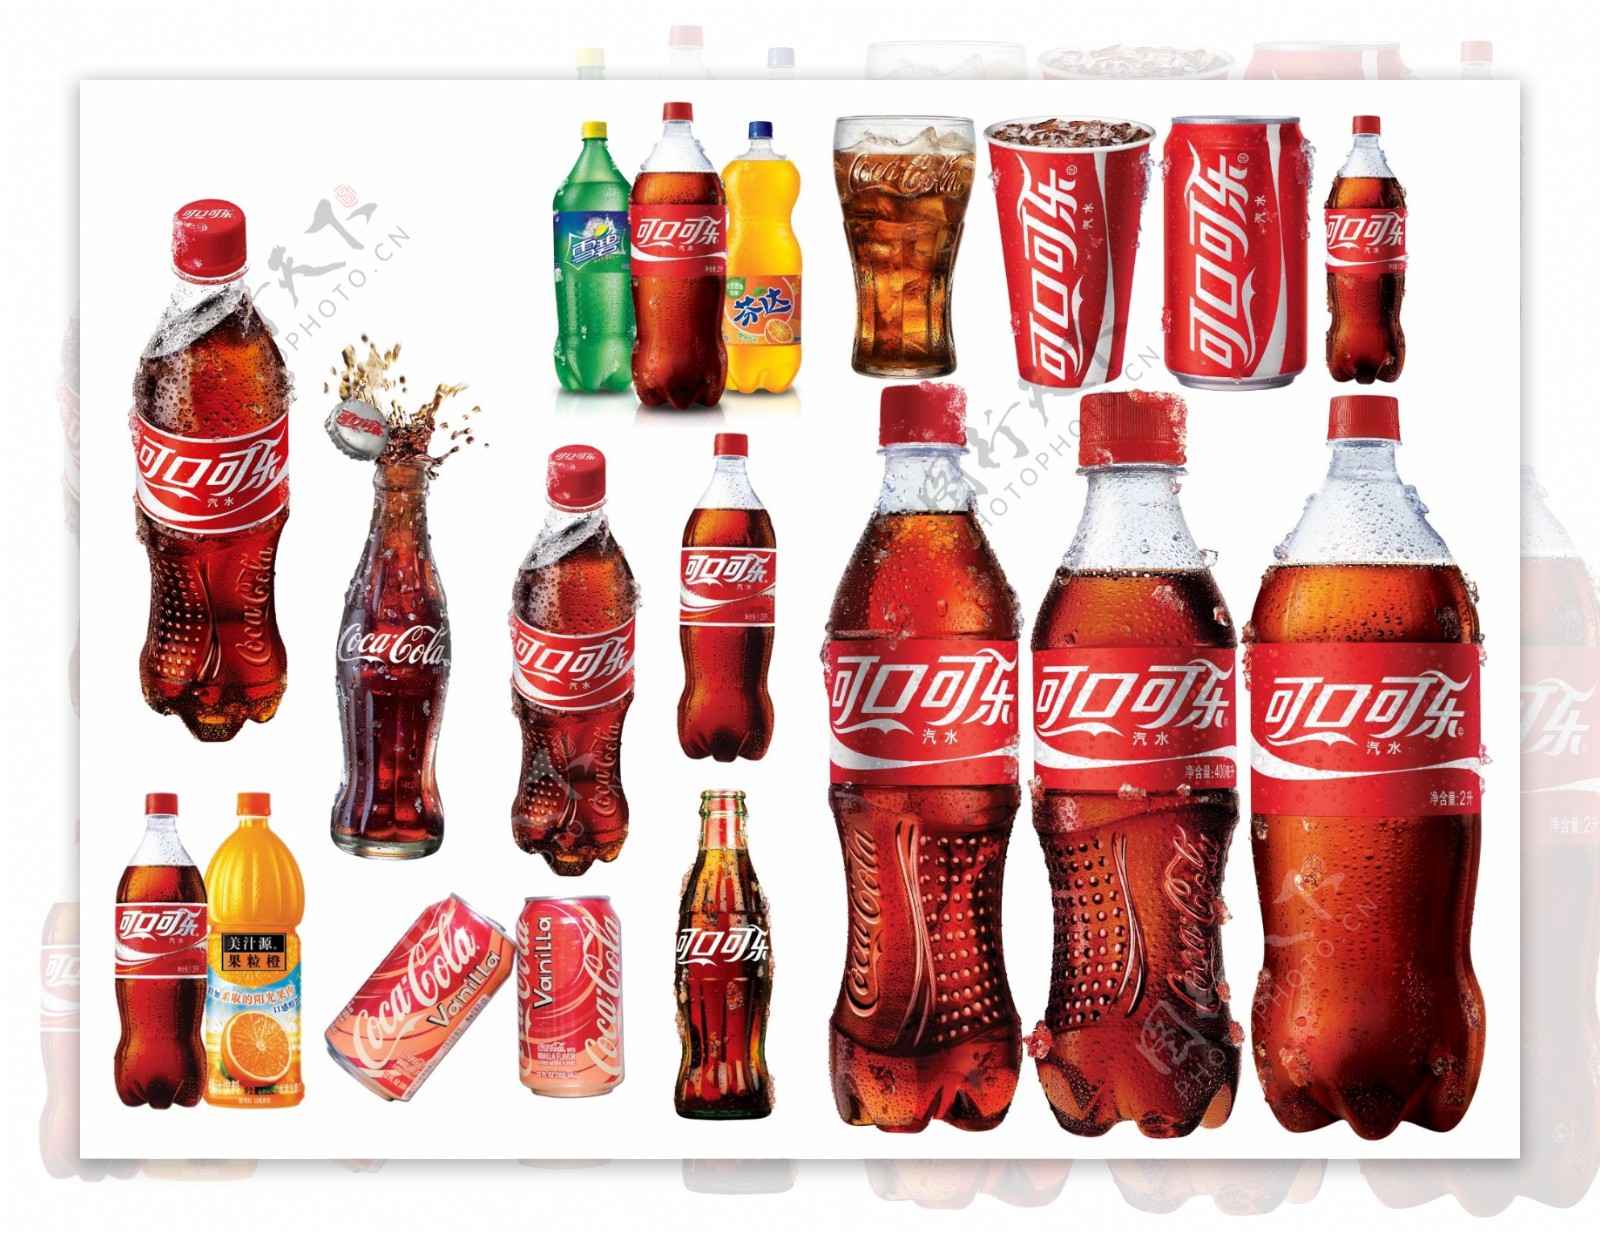 可口可乐全系列瓶图片